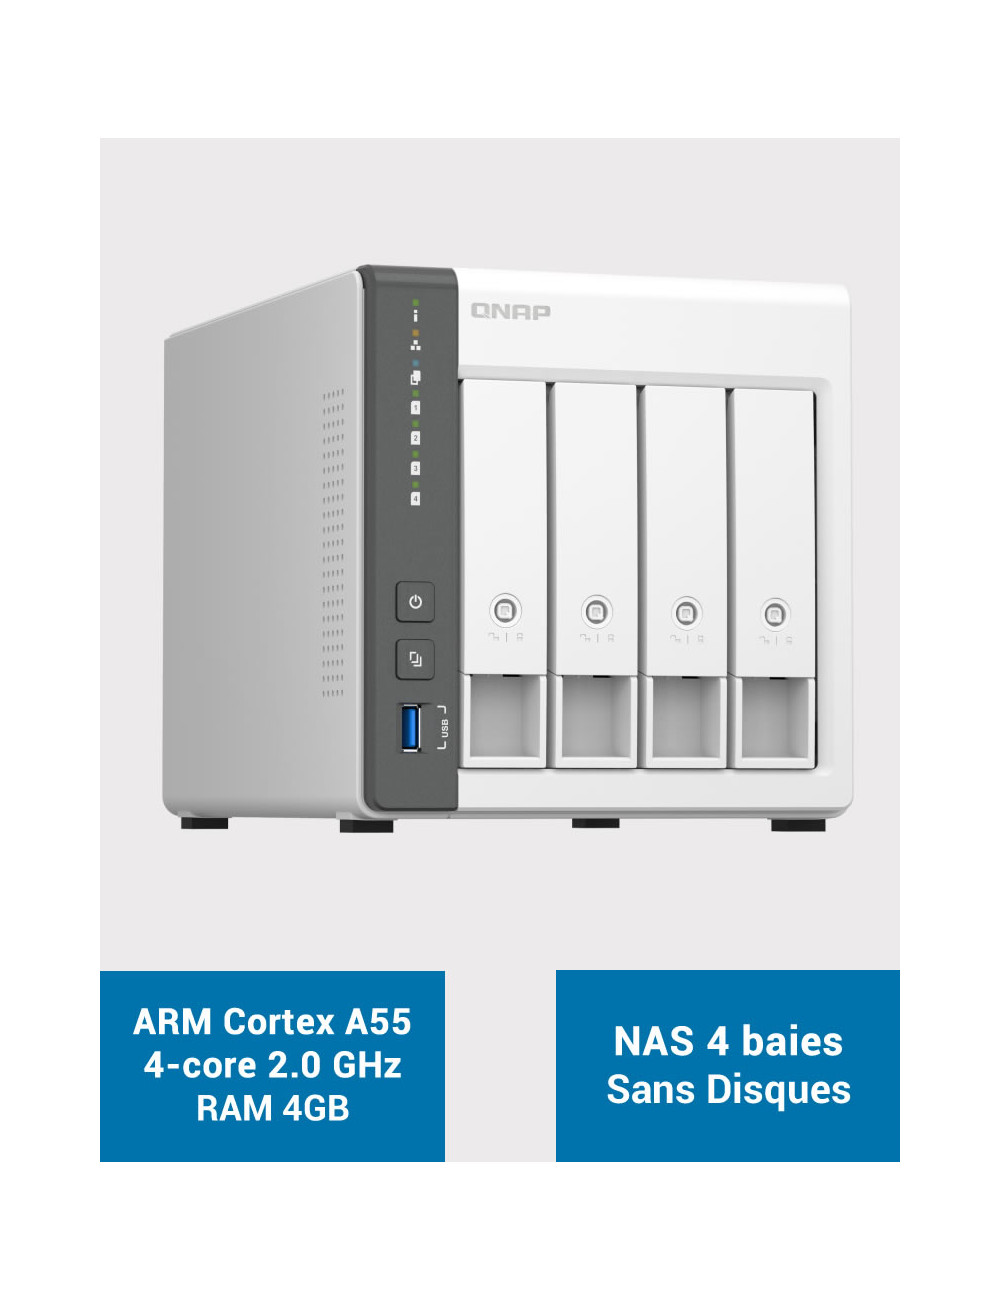 QNAP TS-433 4GB Serveur NAS 4 baies (Sans disques)